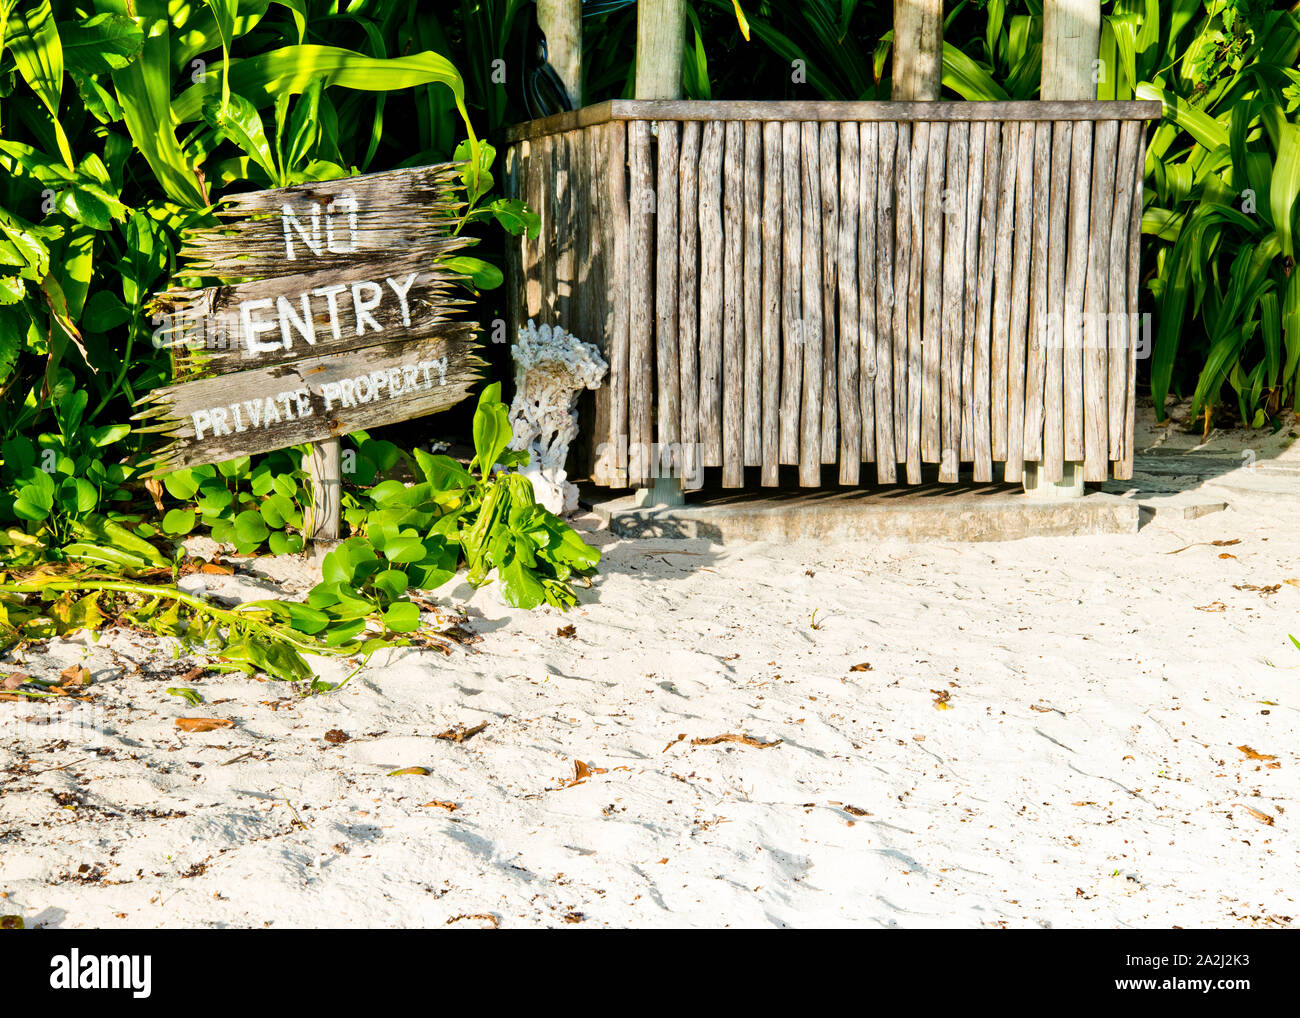 Panneau en bois au bord de la plage, vous indiquant que c'est une propriété privée, "pas d'entrée" avec poste de garde, cabane en bois. Banque D'Images